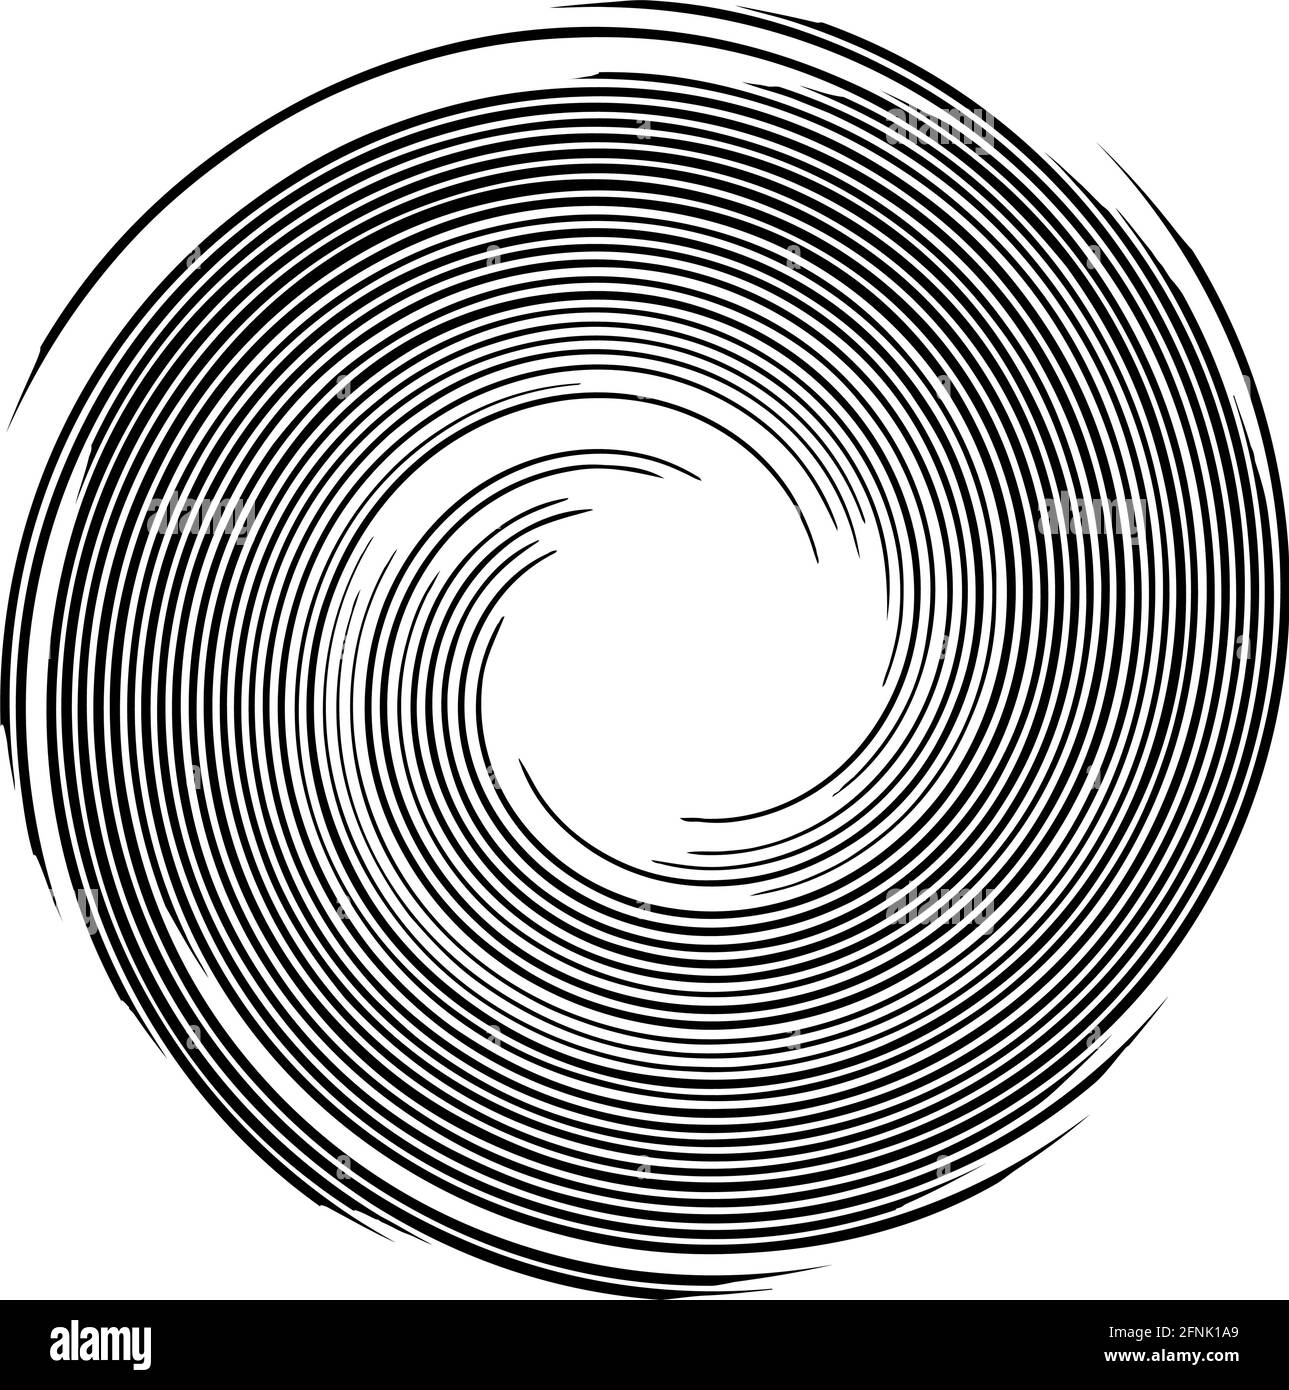 Spiralförmigendes Design-Element für Wirbel, Wirbel, Wirbel – Stock-Vektor-Illustration, Clip-Art-Grafiken Stock Vektor